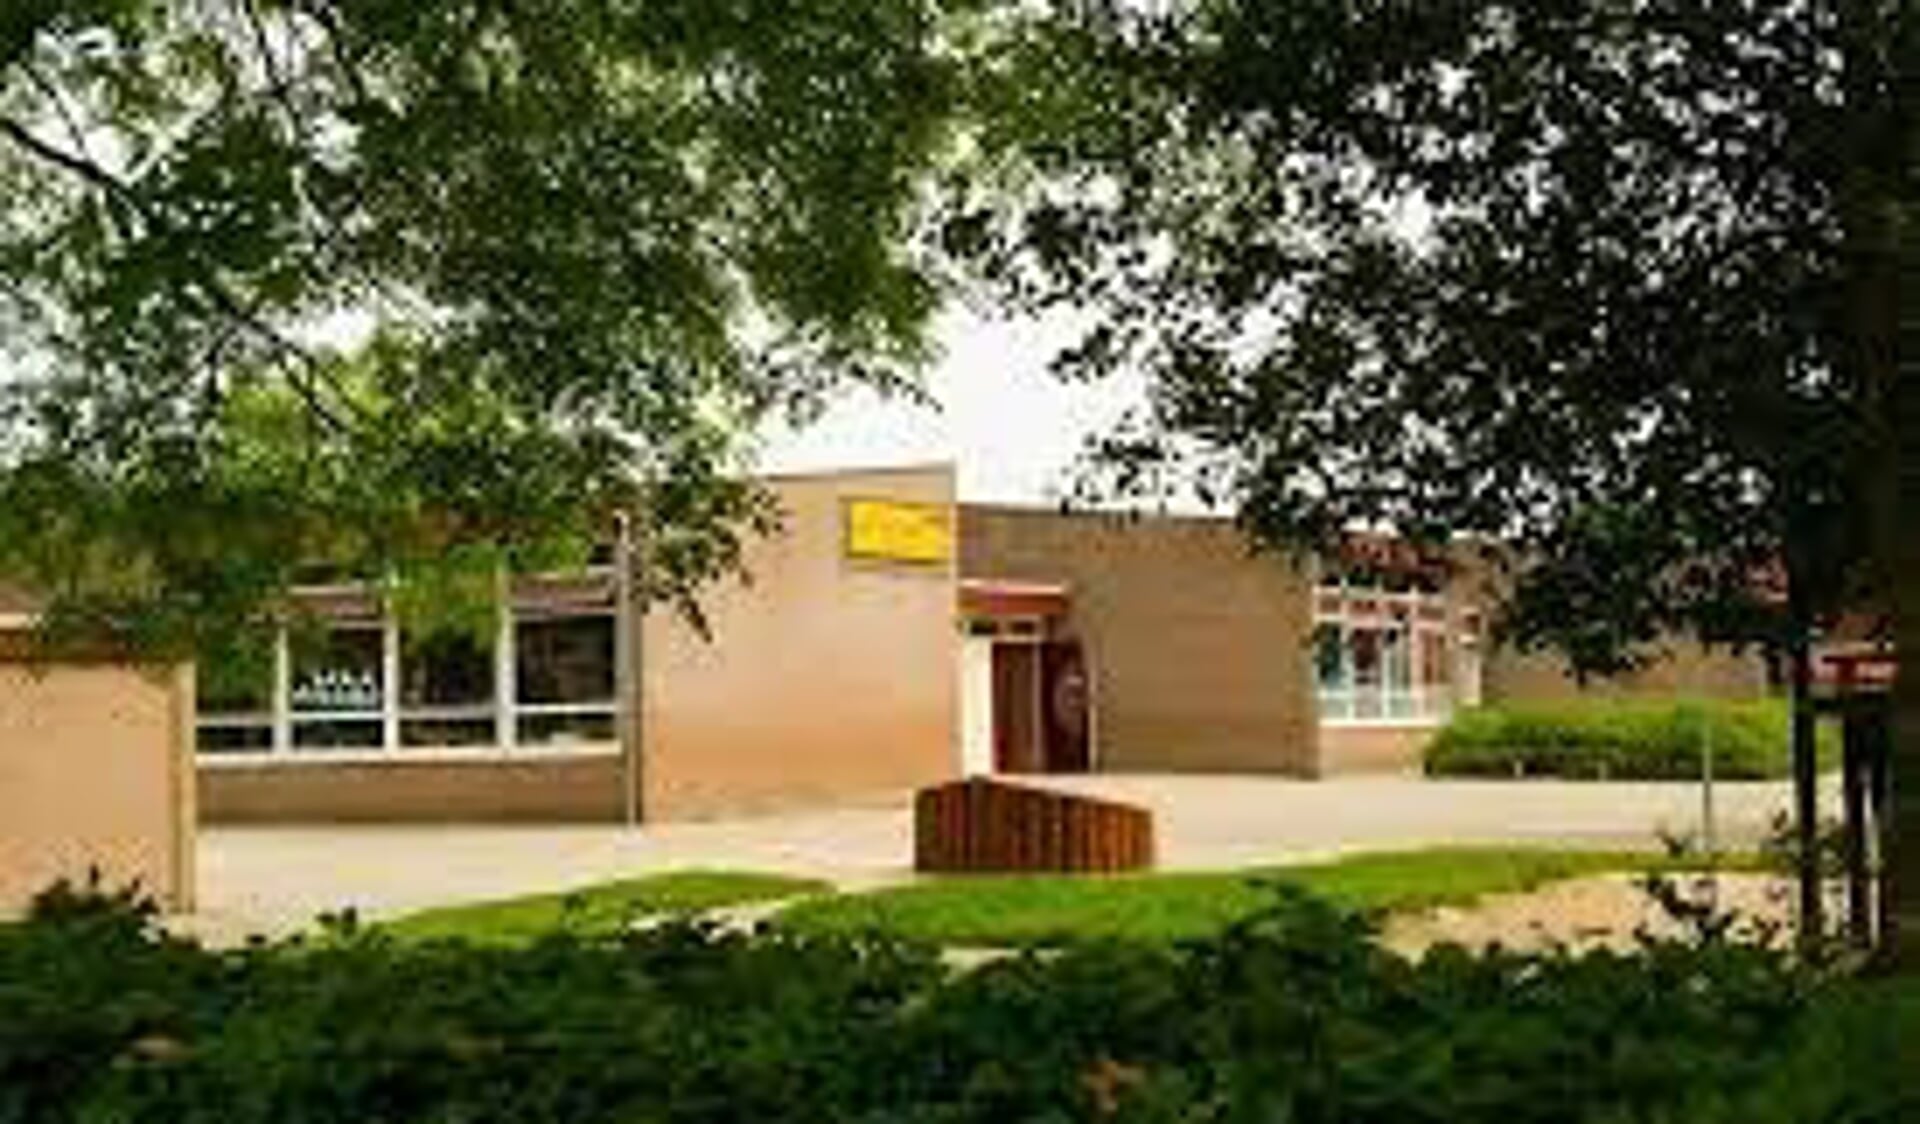 Het schoolgebouw van Het Kompas.